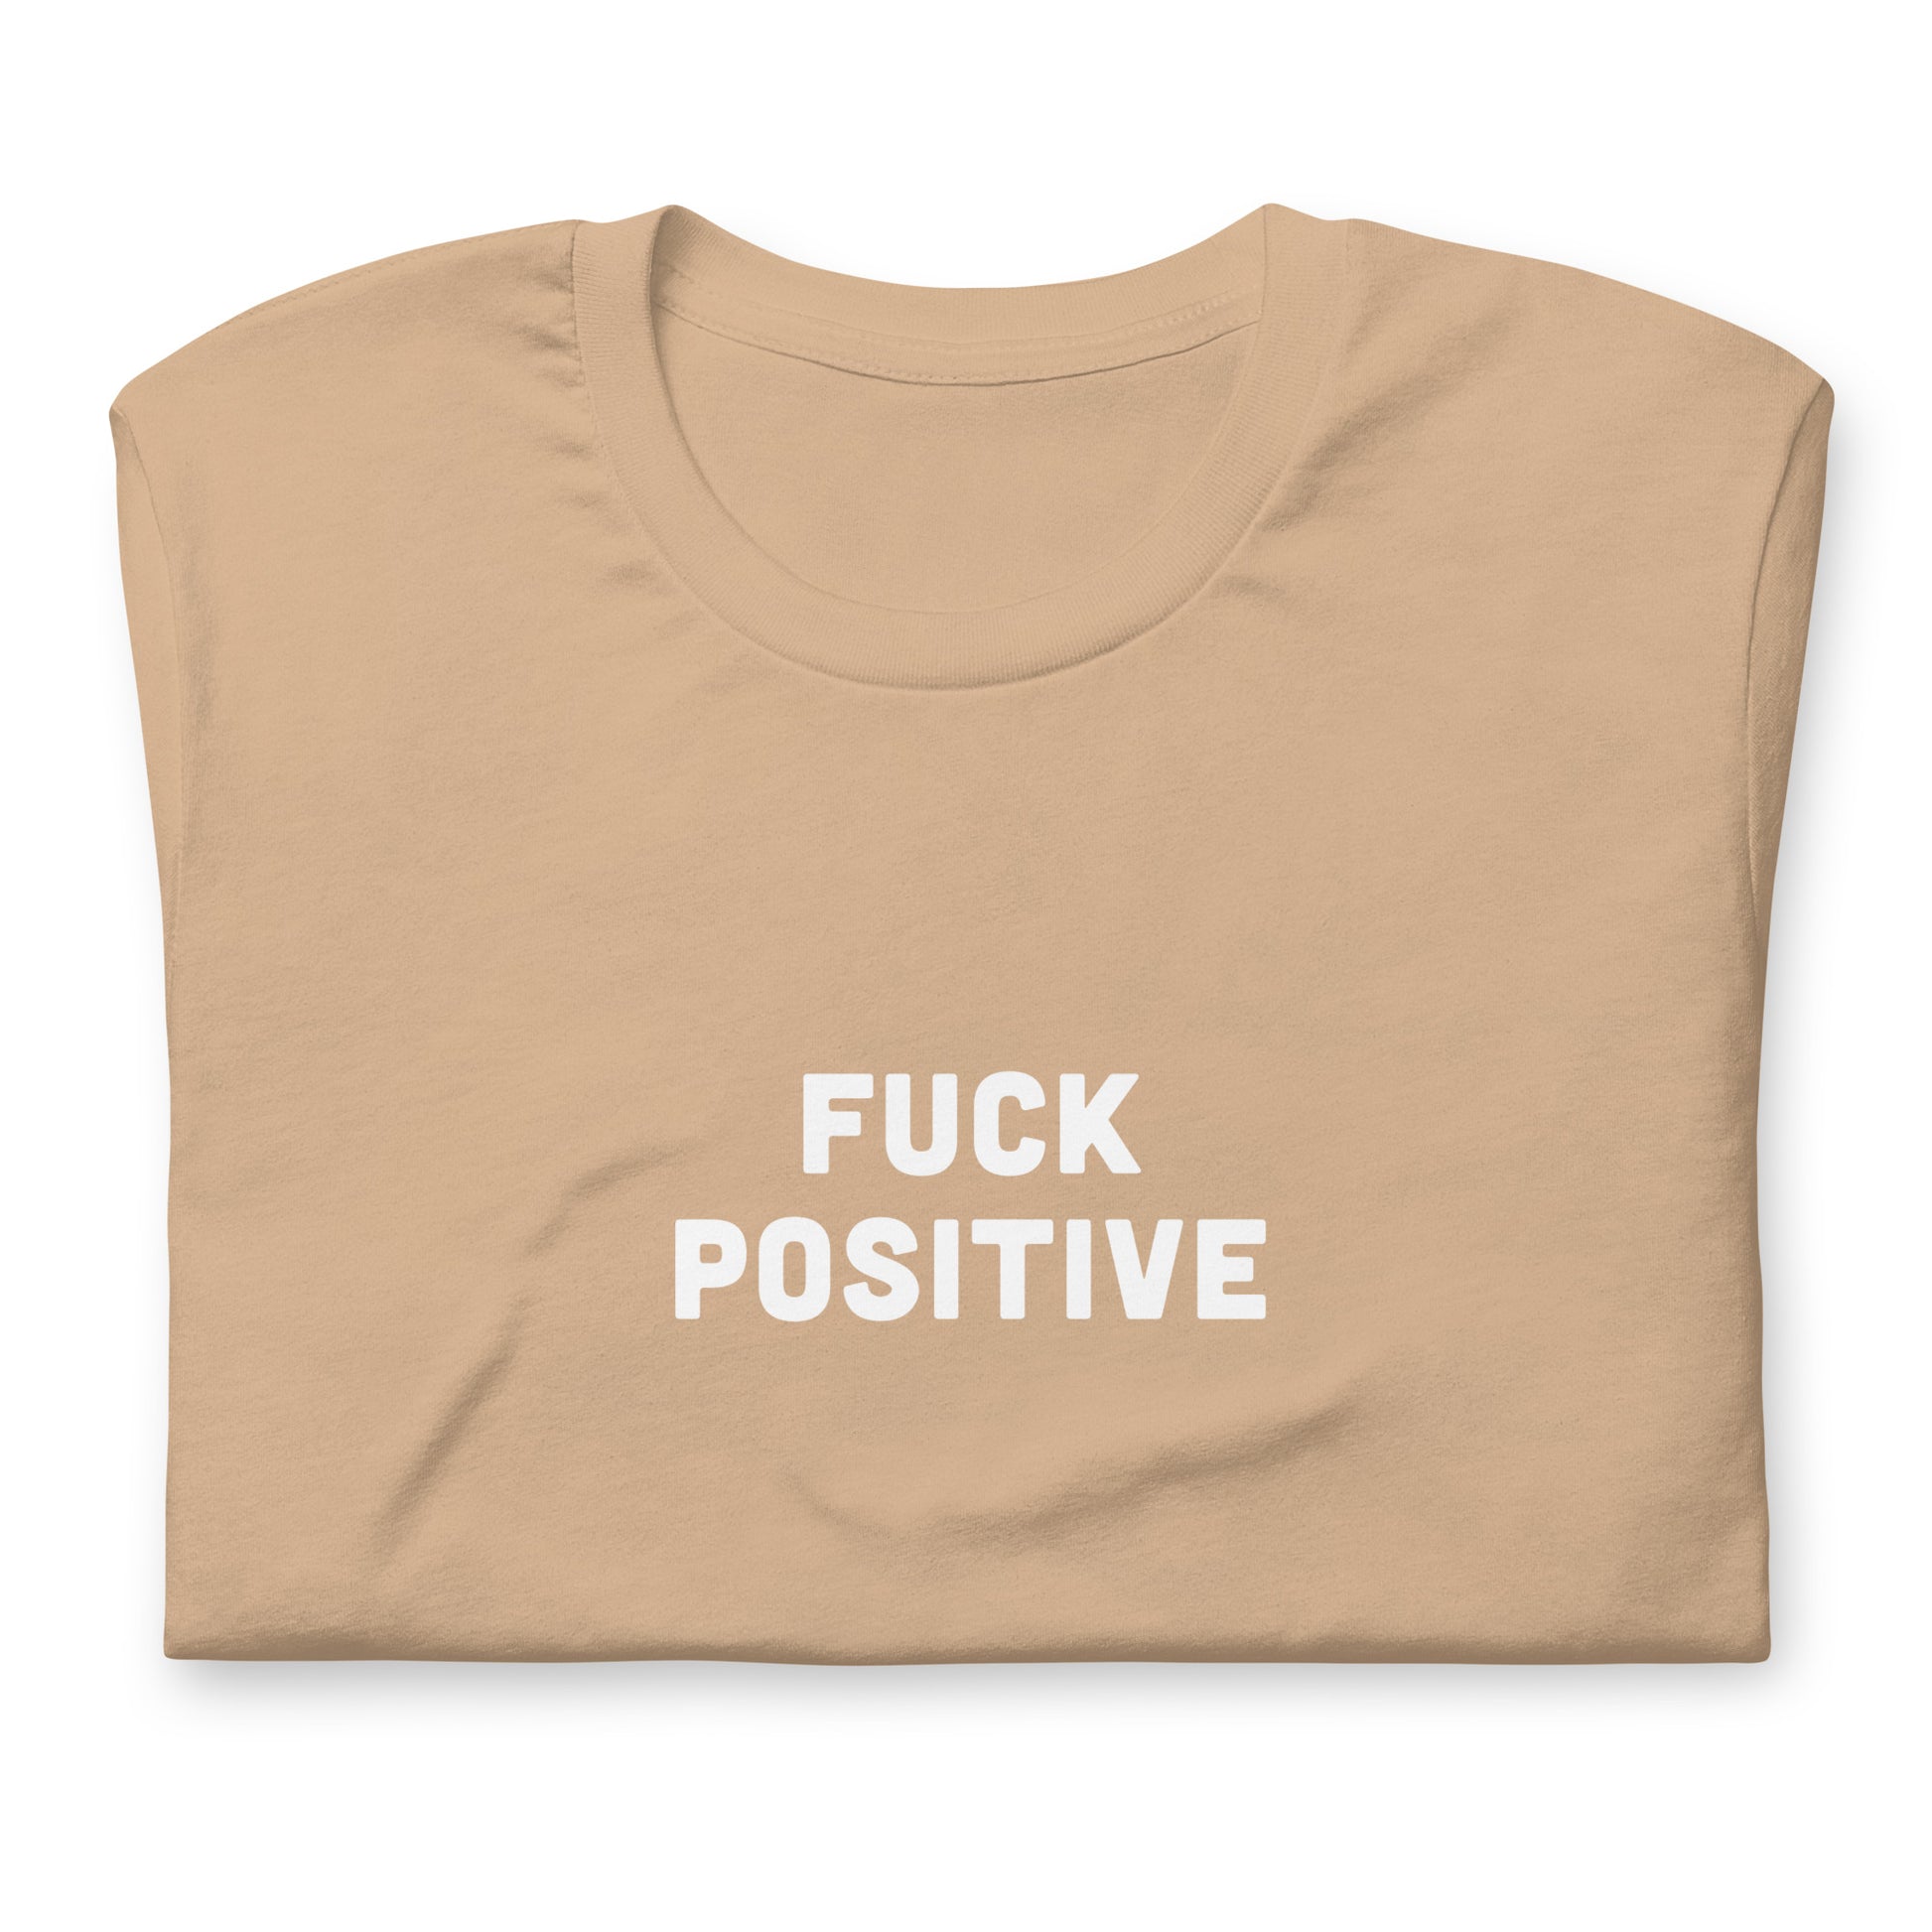 Fuck Positive T-Shirt Size XL Color Forest